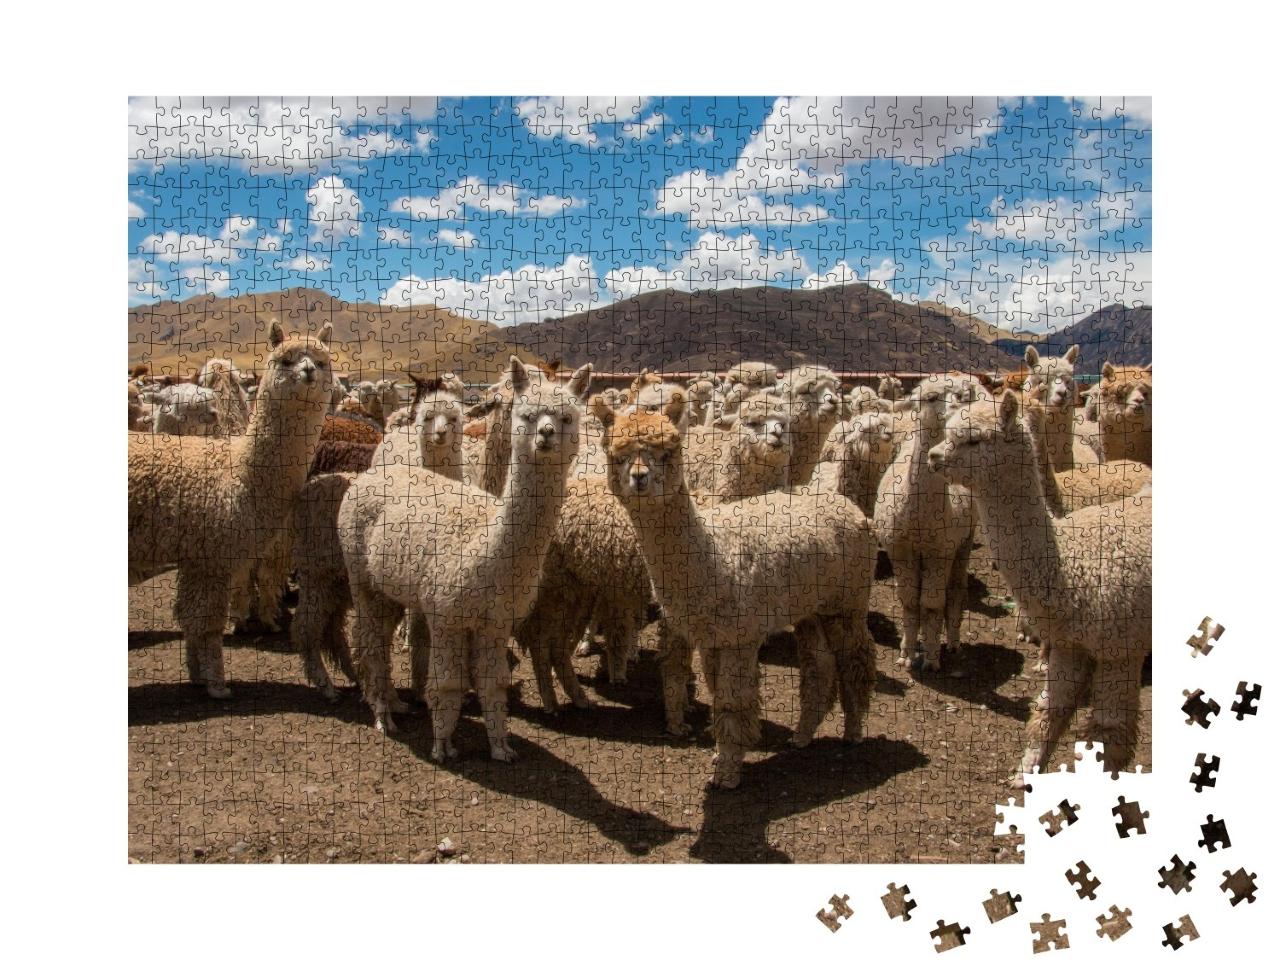 Puzzle de 1000 pièces « Alpagas paissant près de Cusco, Andes, Pérou »